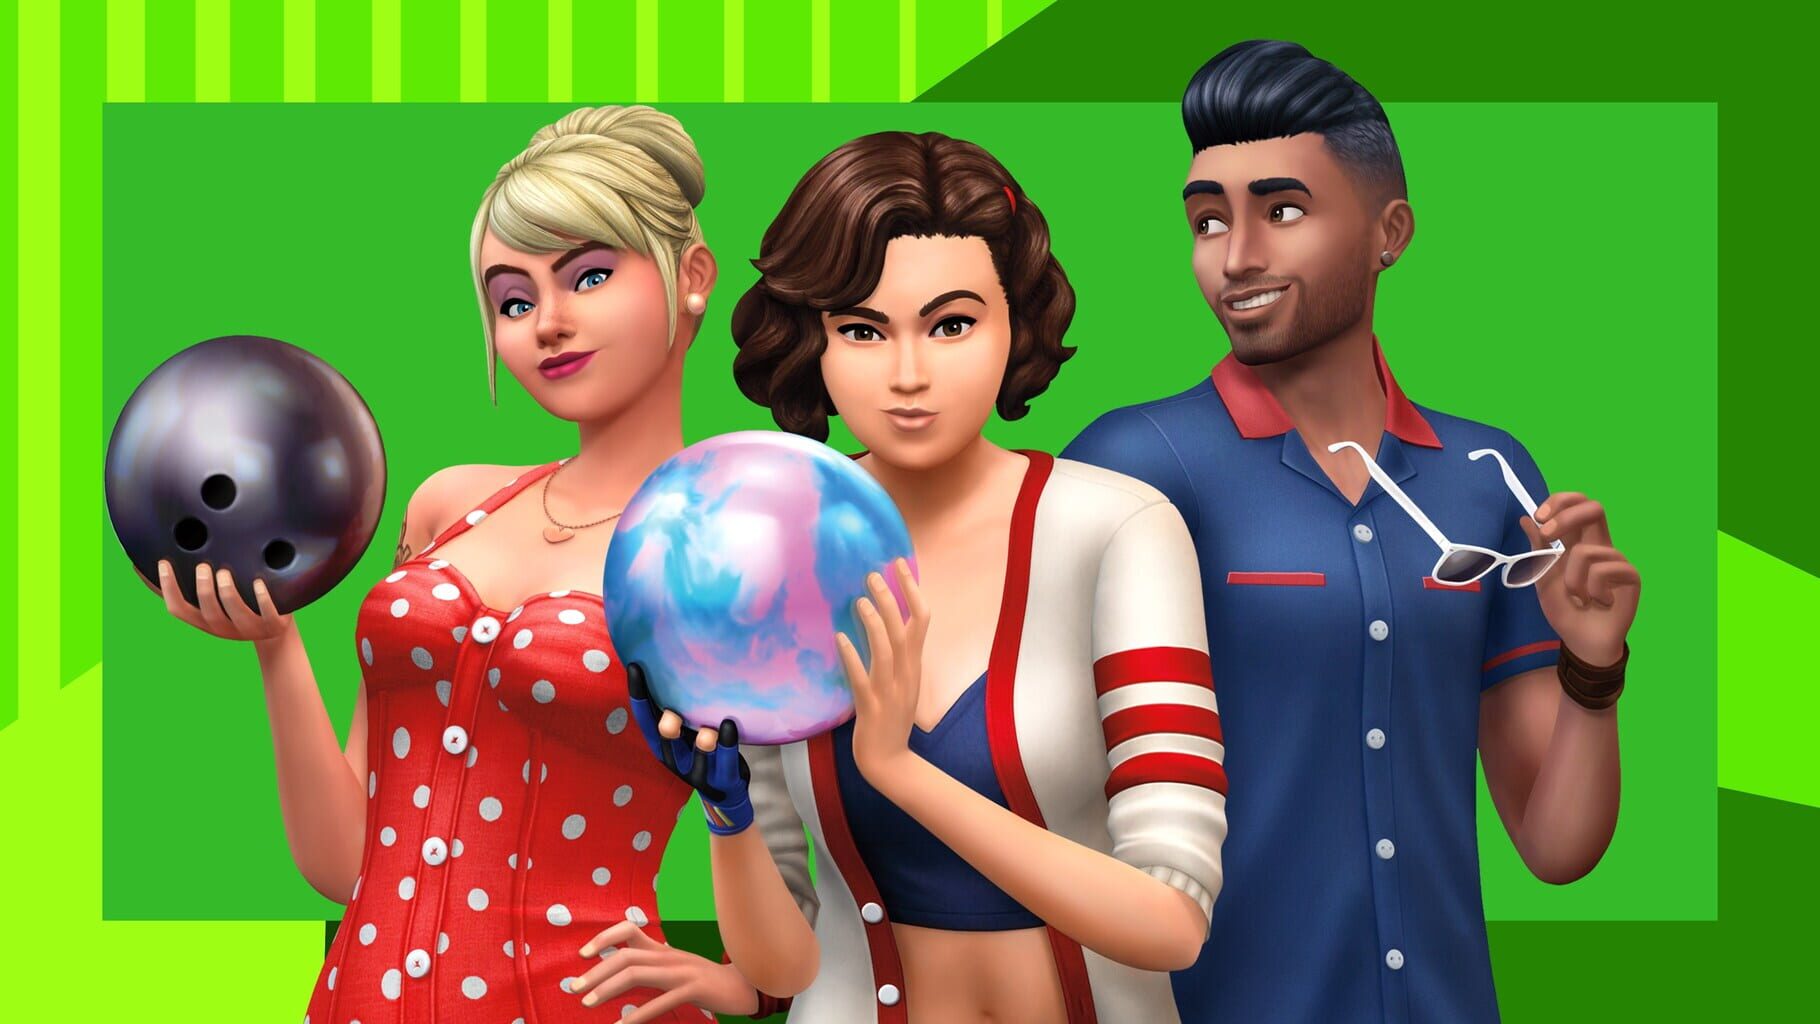 Arte - The Sims 4: Bowling Night Stuff